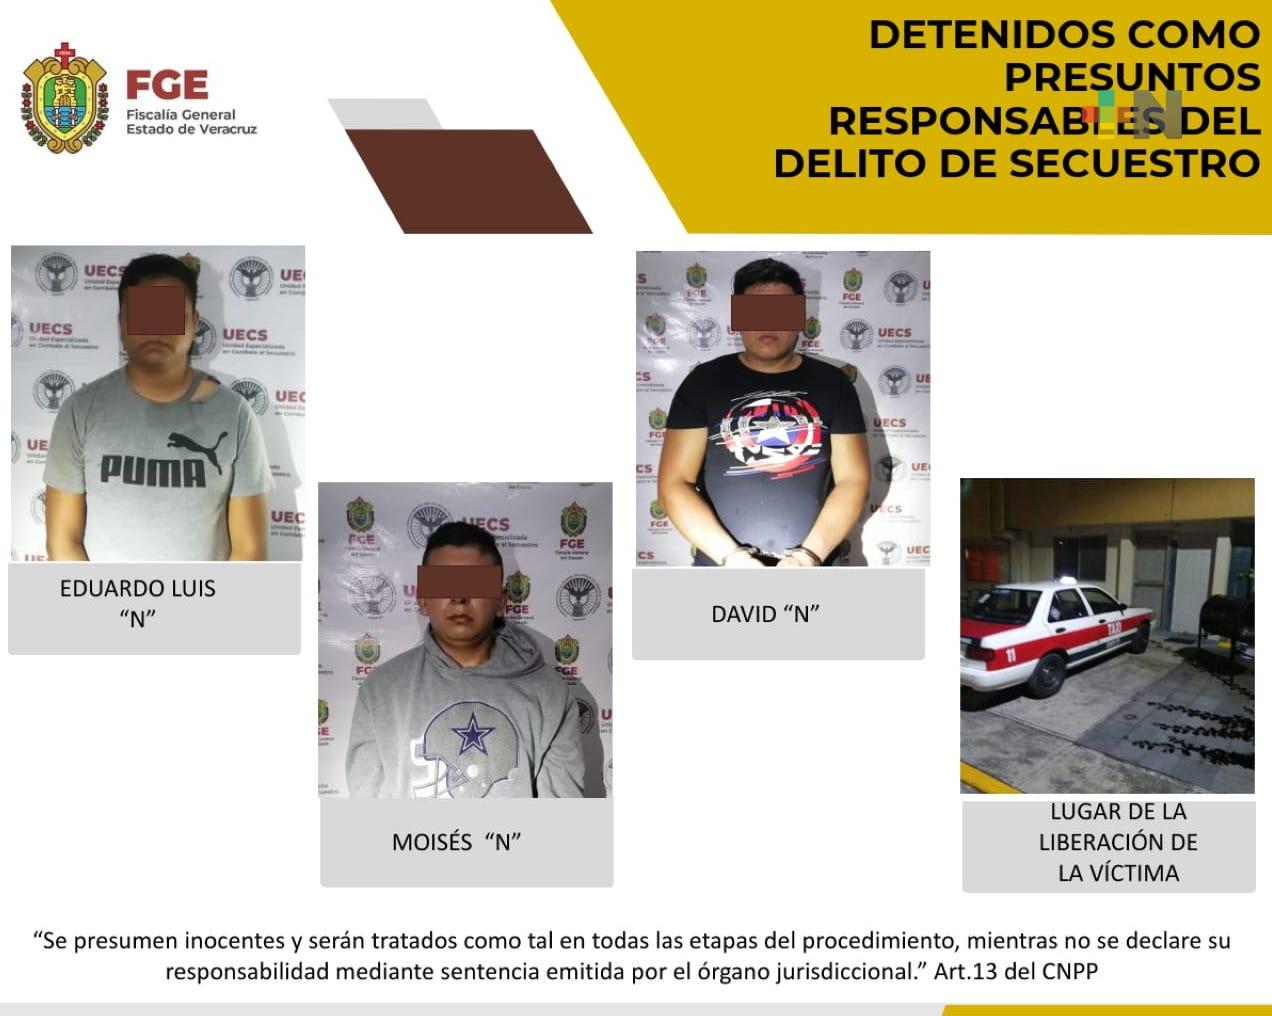 UECS rescata a víctima de secuestro en Nogales